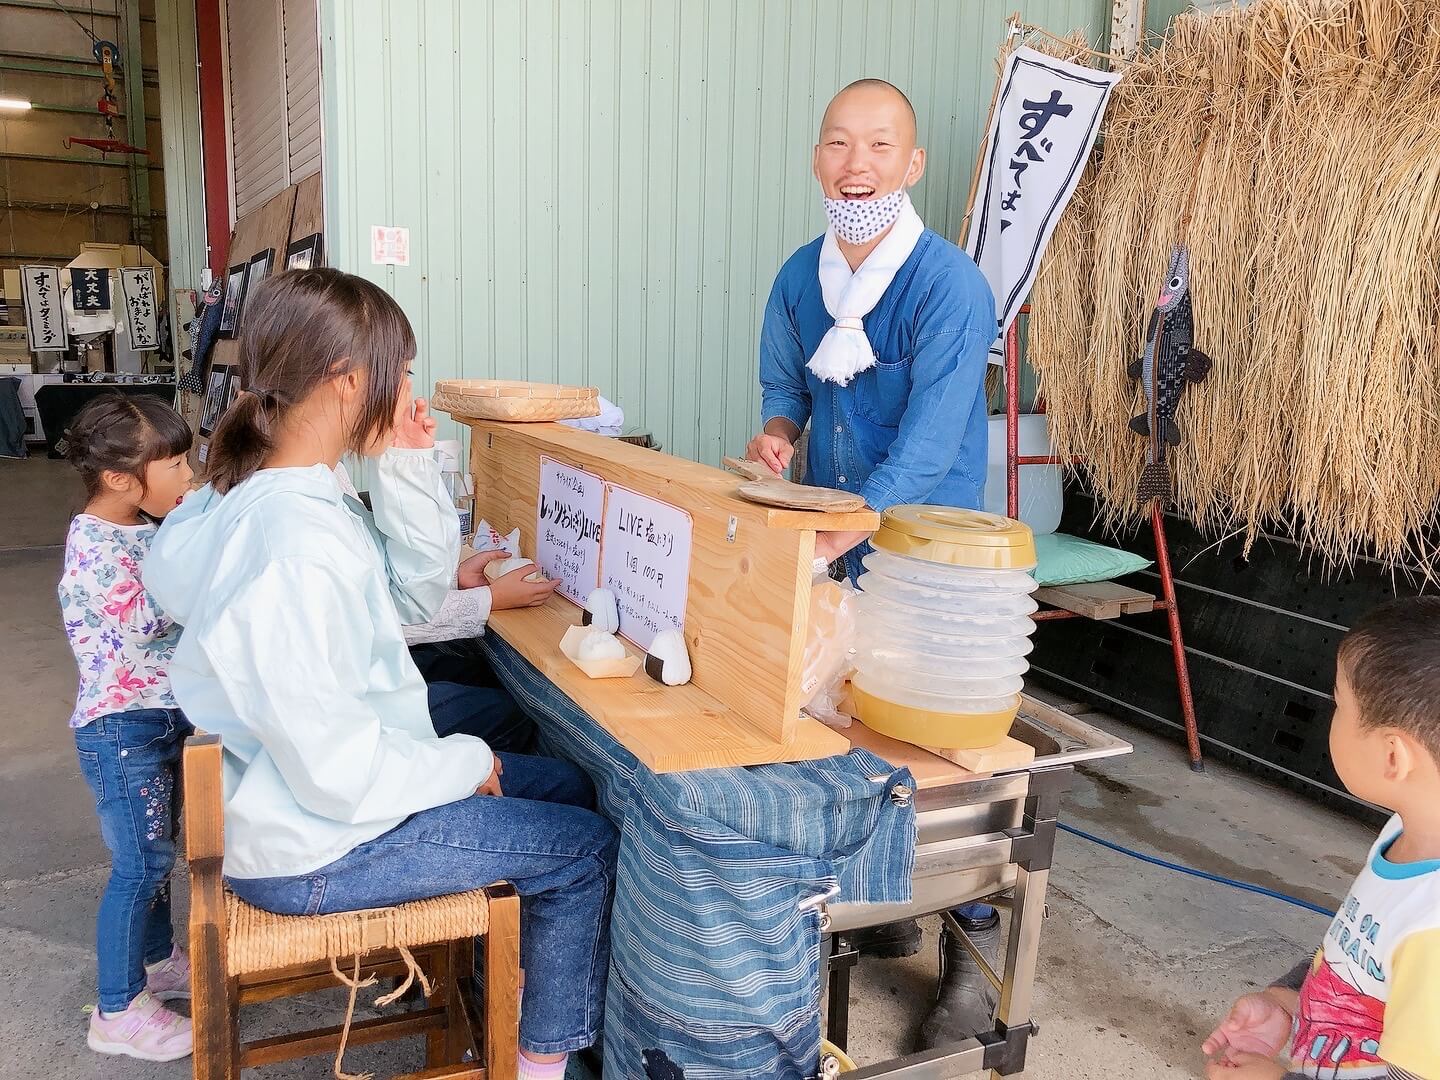 カウンター席でおにぎりを食べる子供たちと、青松さんの笑顔